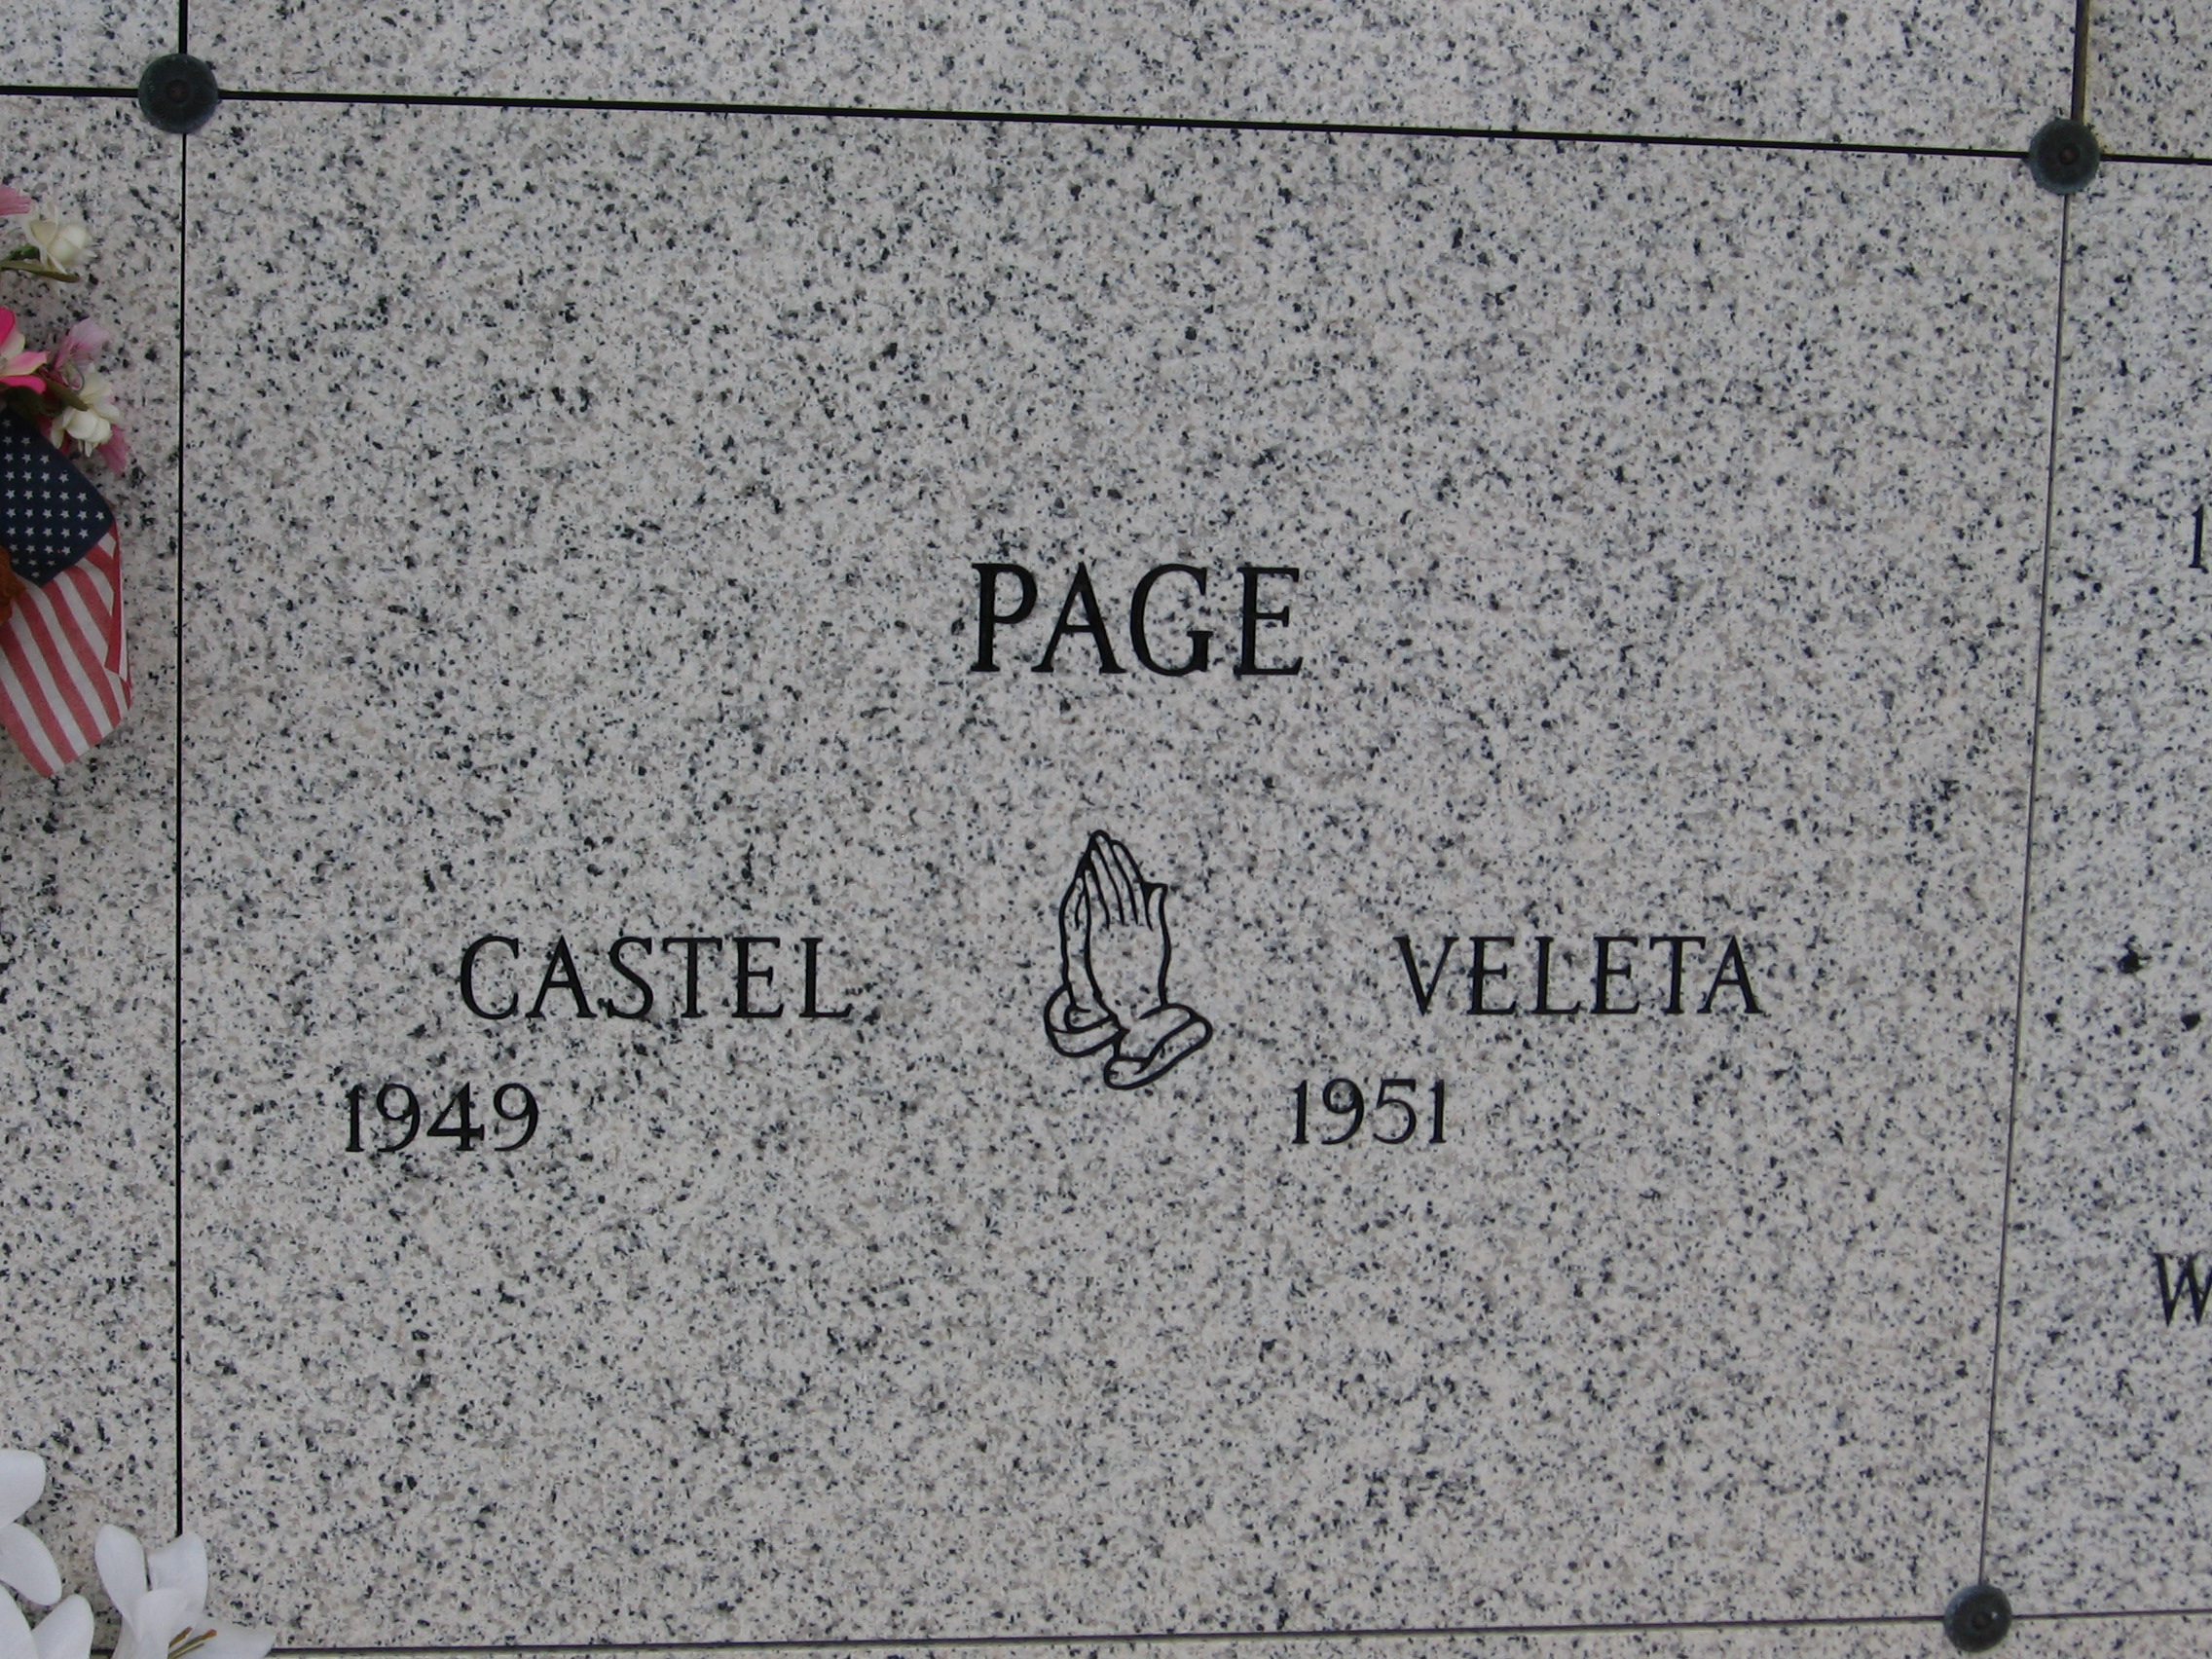 Castel Page